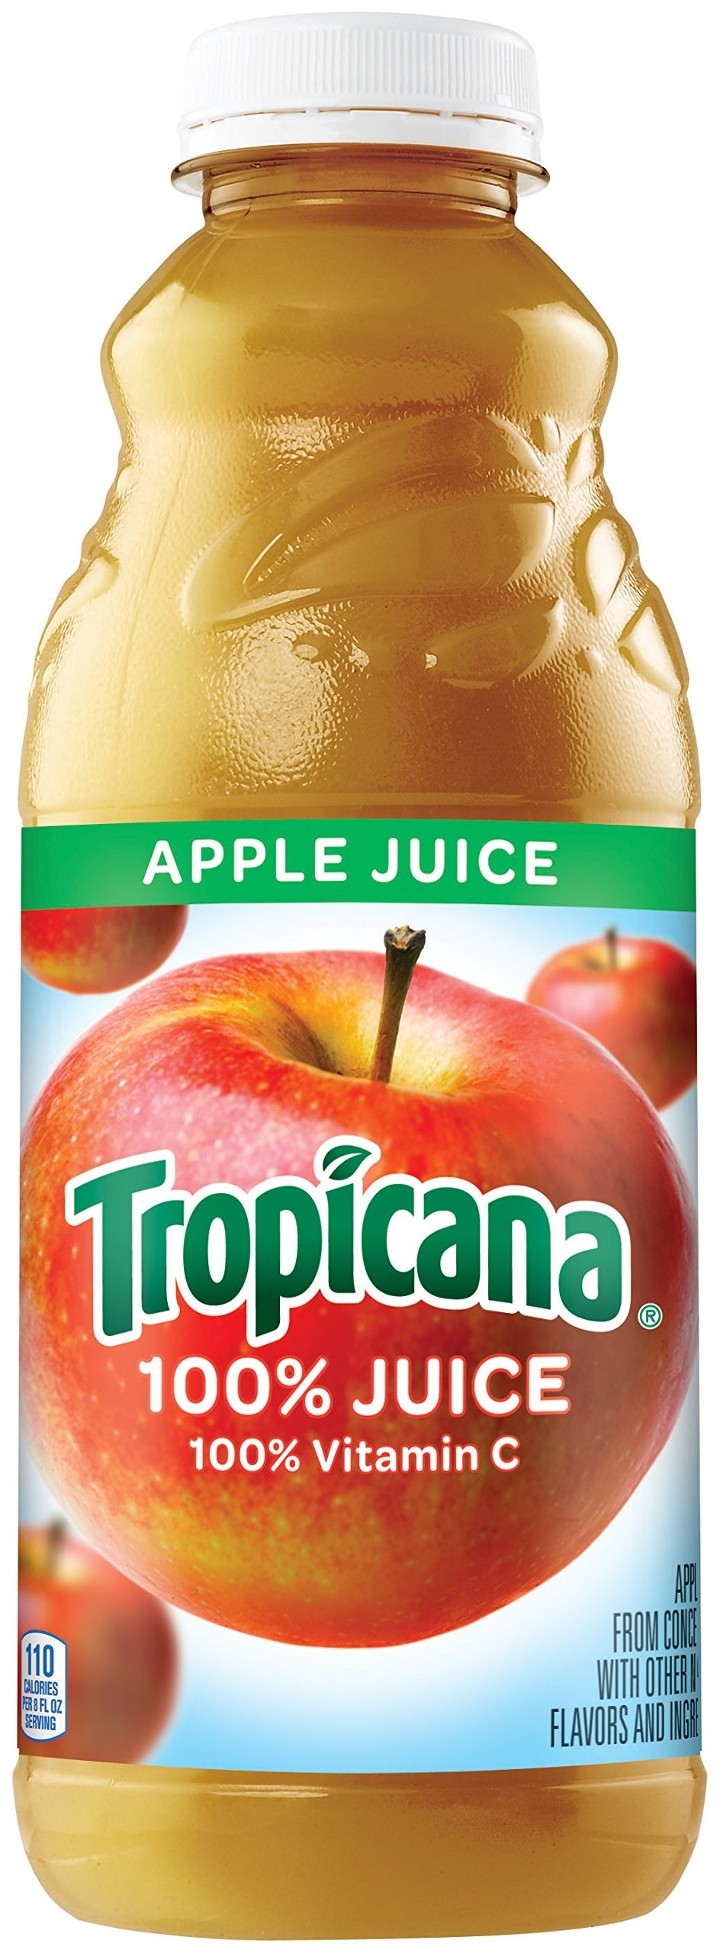 ***Apple Juice